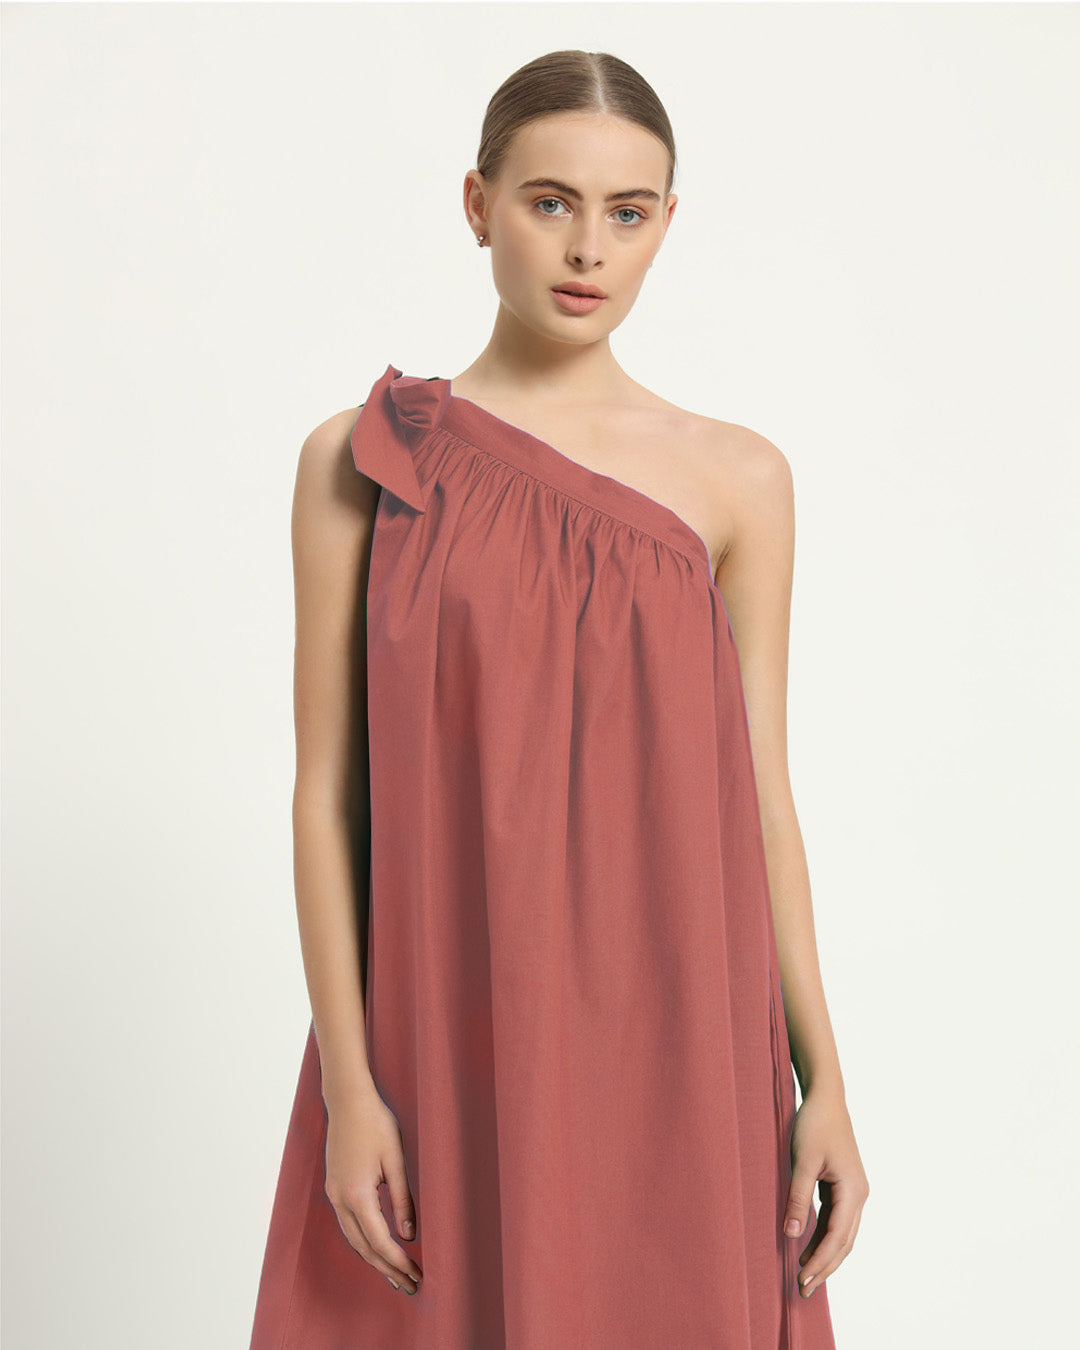 The Strehla Ivory Pink Cotton Dress